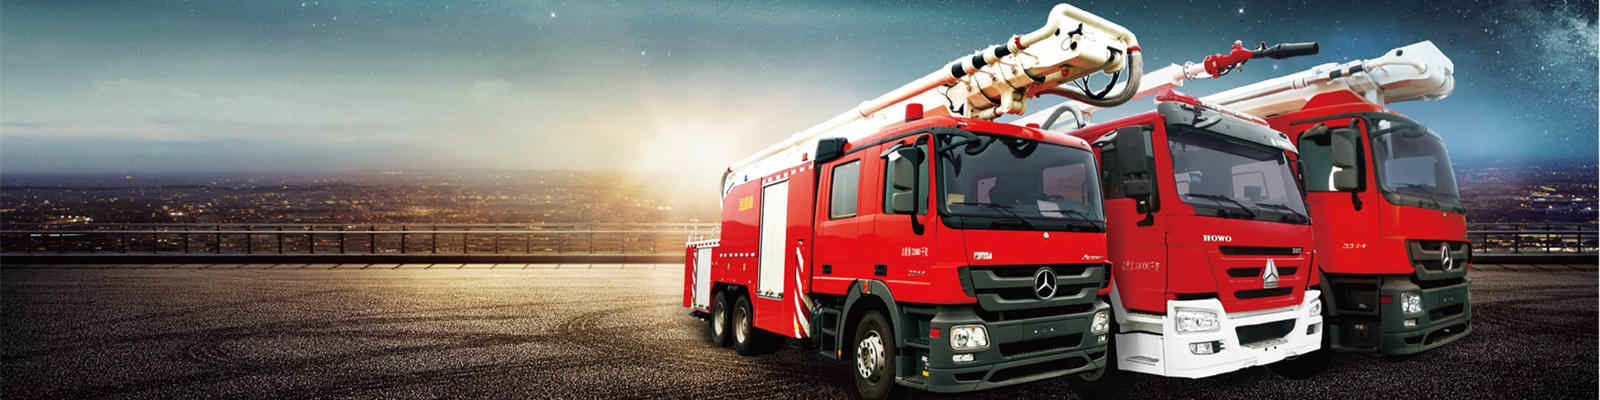 جودة شاحنات الإطفاء التجارية مصنع